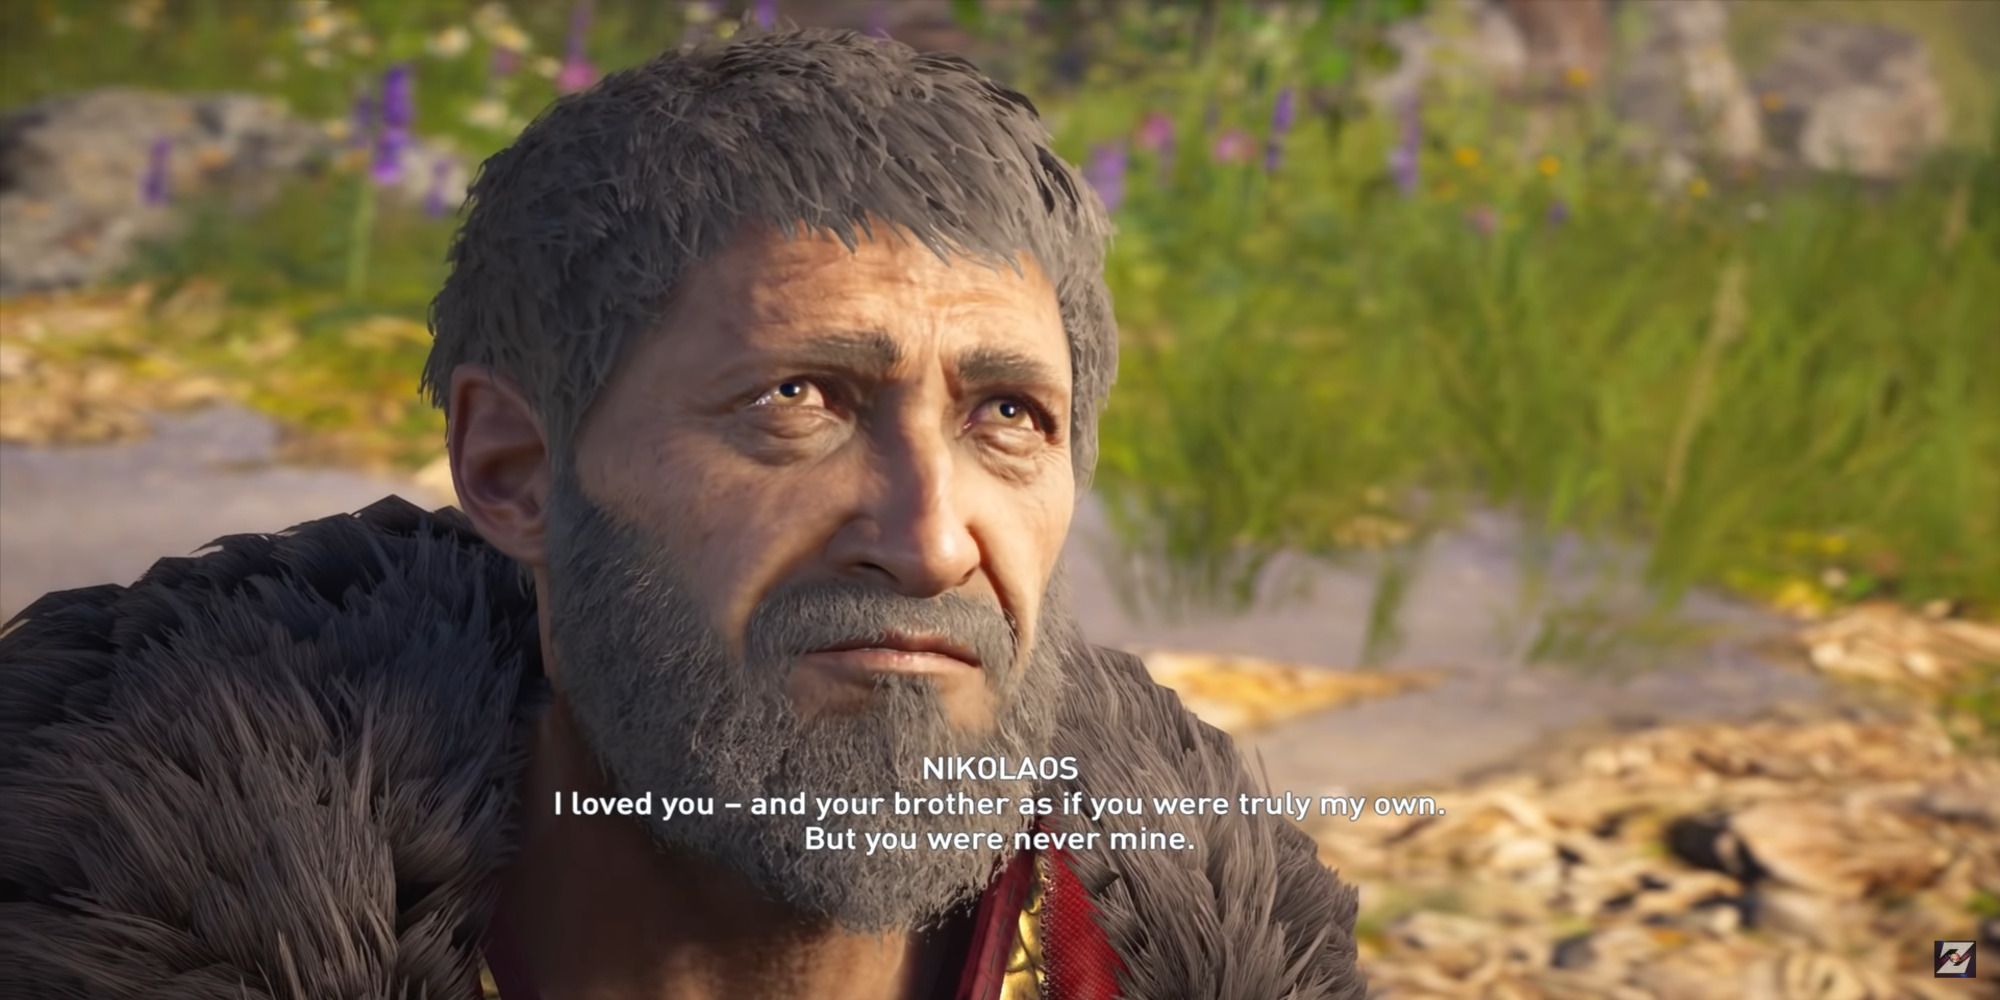 Nikolaos from Assassin's Creed Odyssey